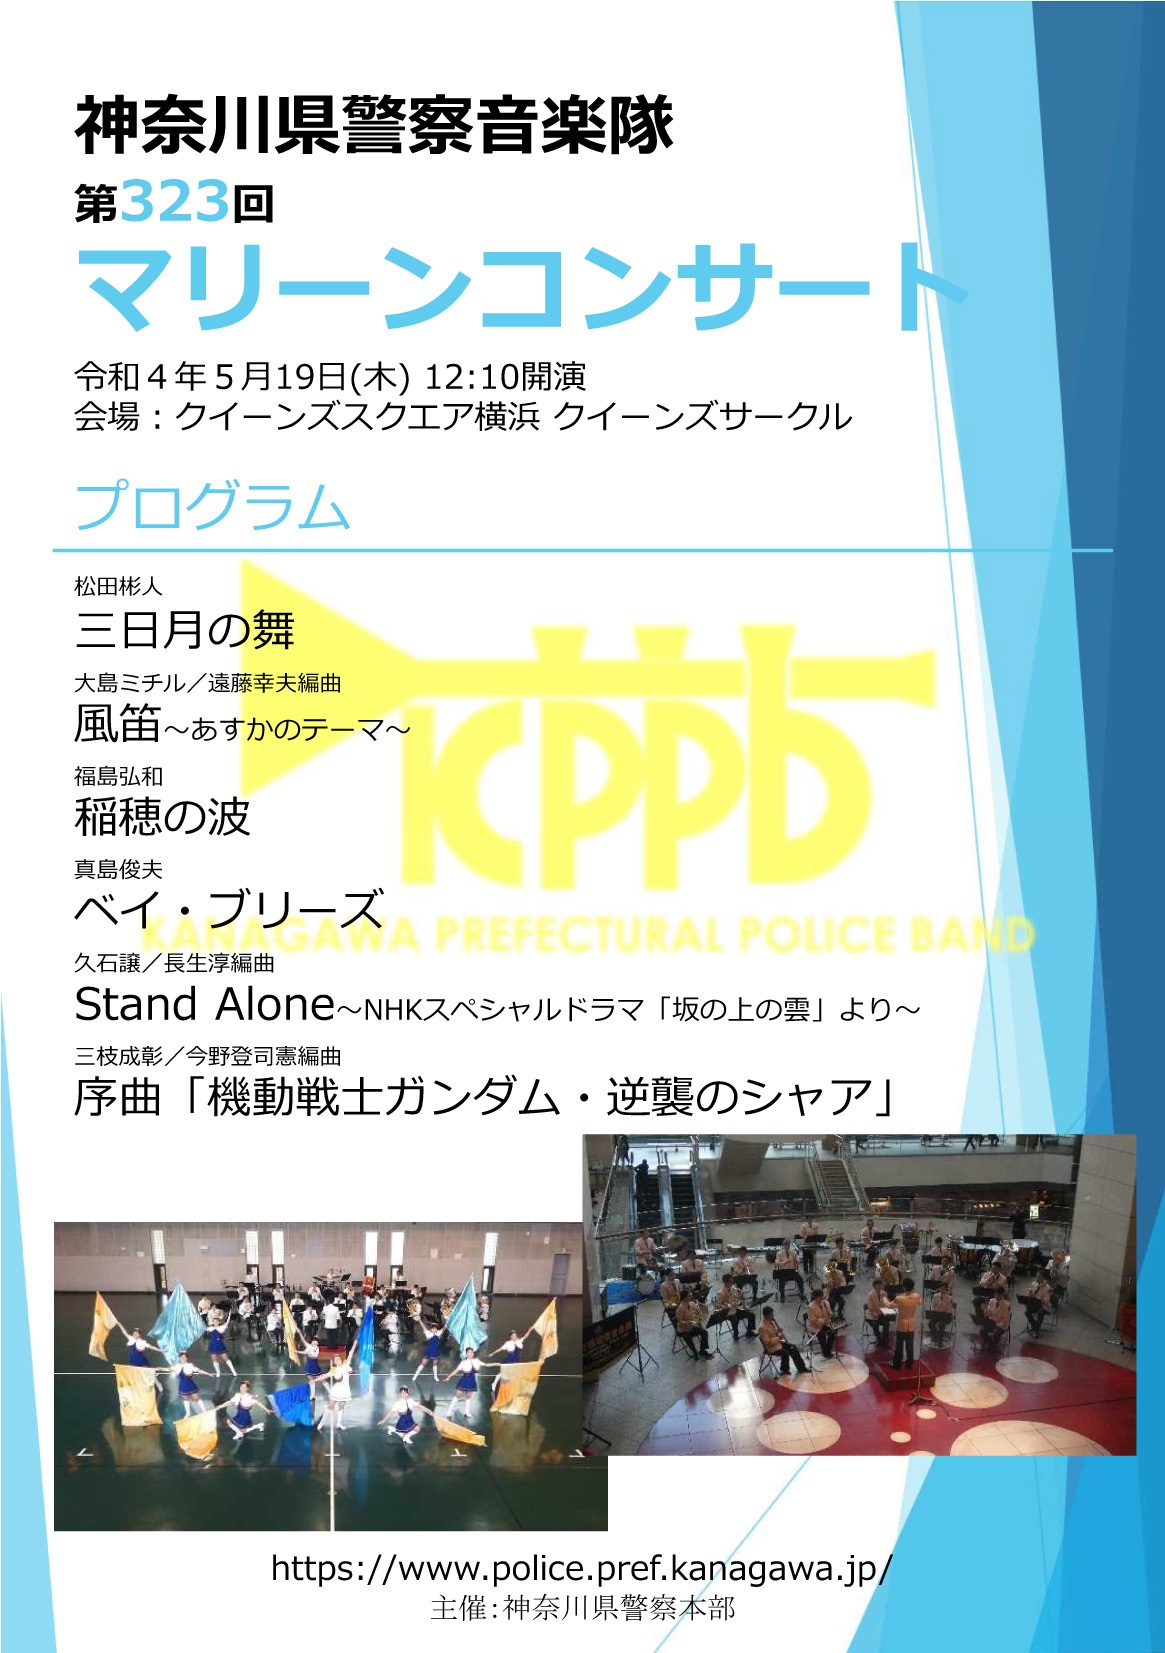 神奈川県警察音楽隊 第323回 マリーンコンサートポスター